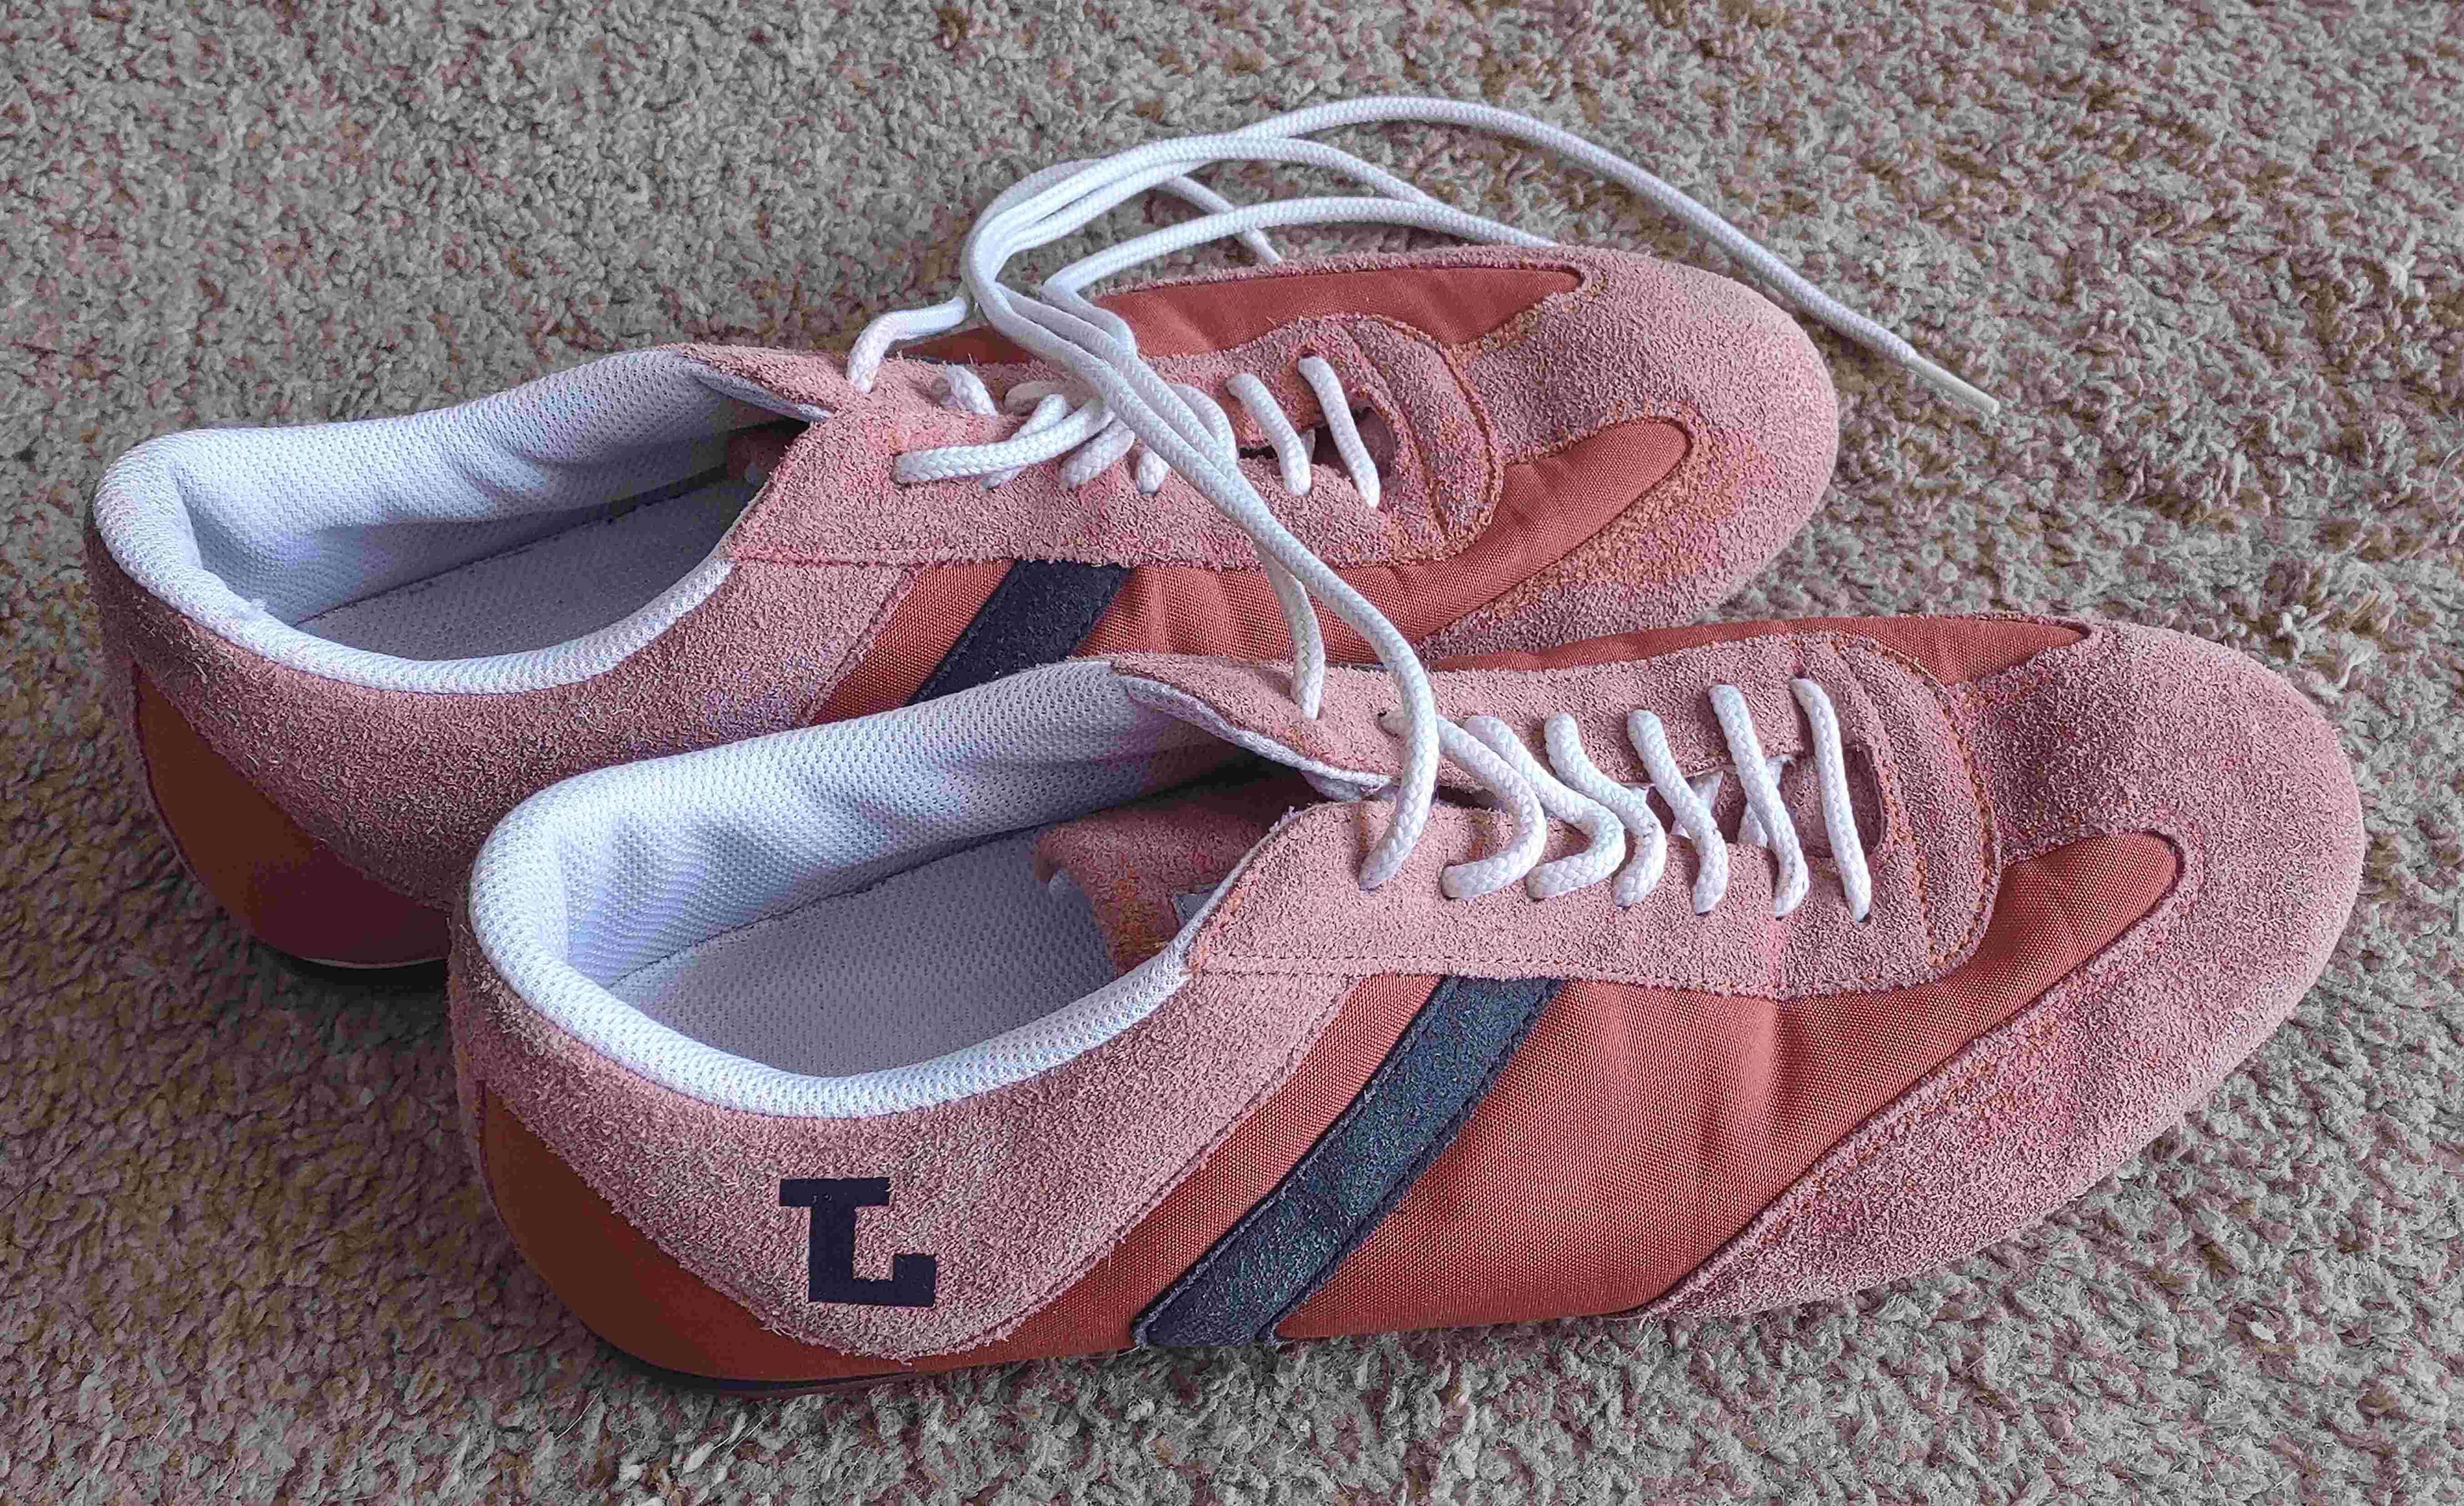 buty adidasy LEVIS LEVI'S - rozmiar 44 - używane